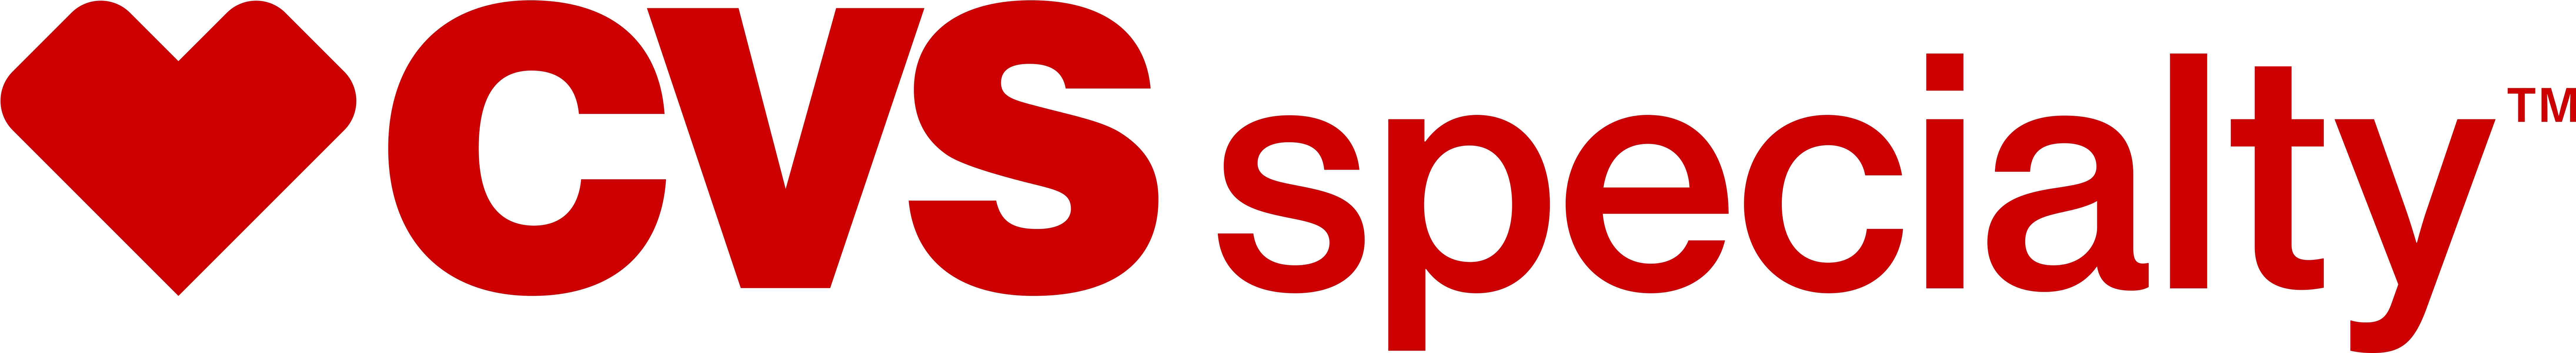 Oracle - Oracle Logo .png (8773x1200)